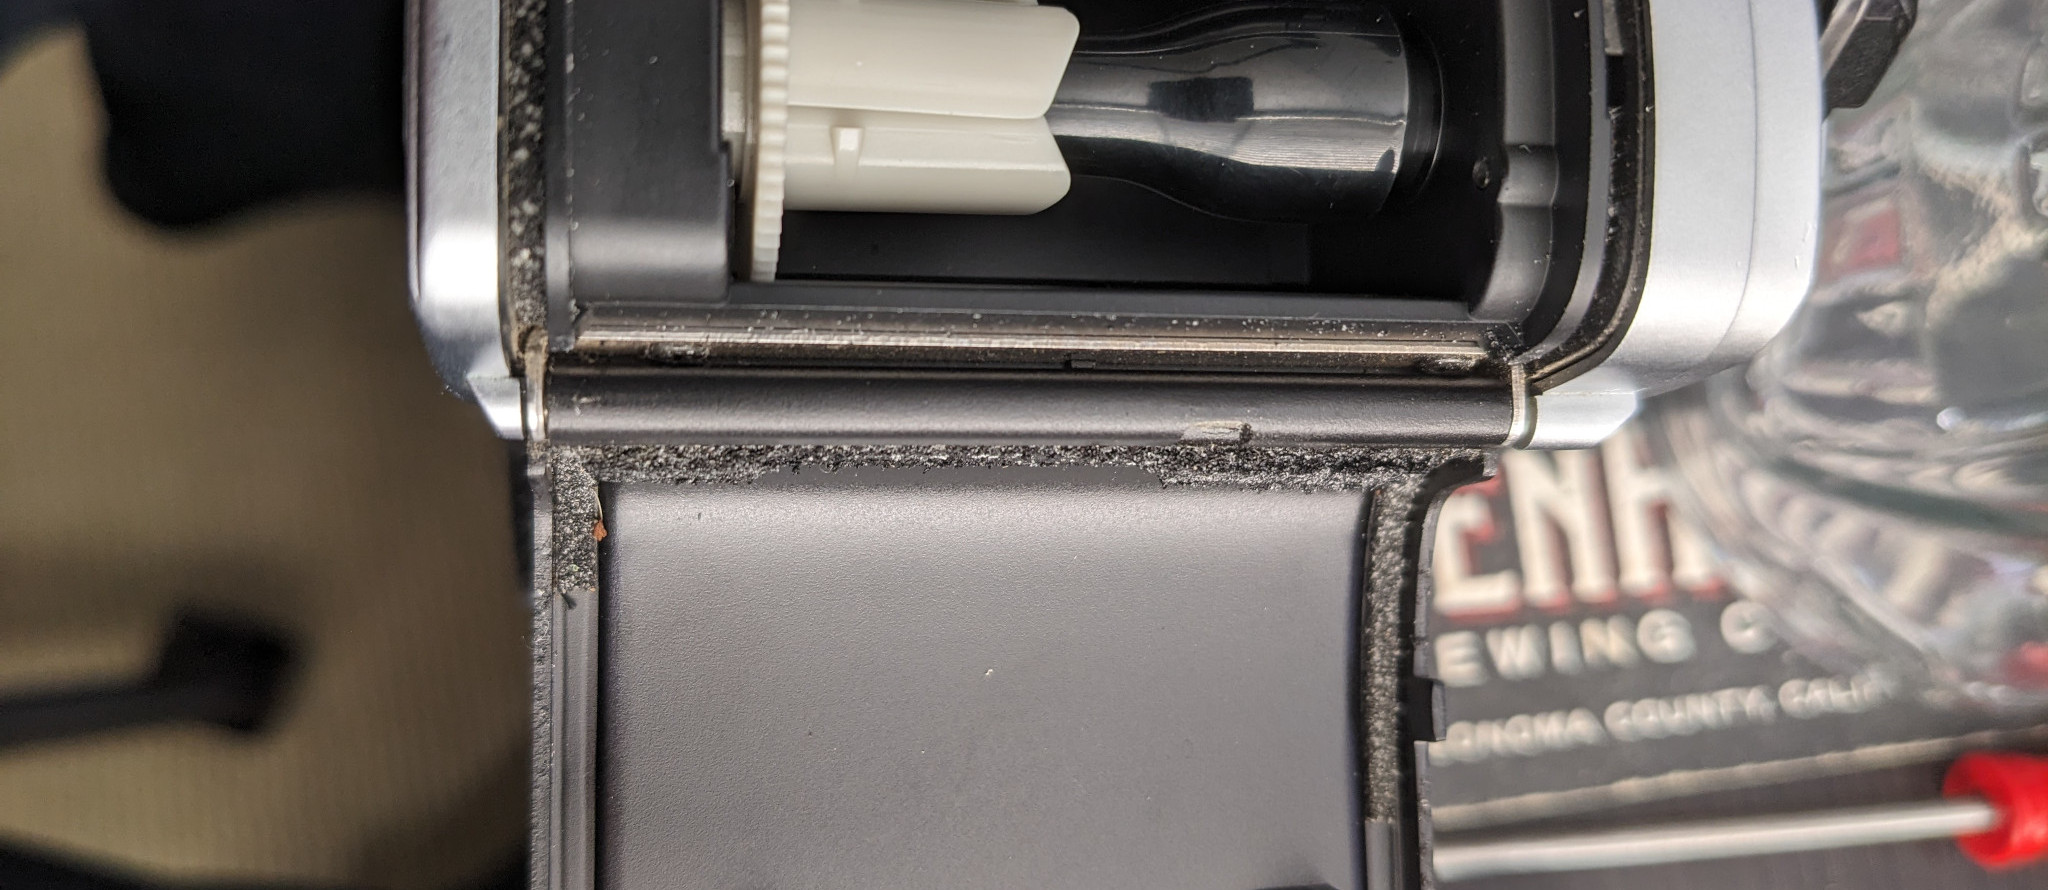 Before the Repair: Crumbling foam lines the camera hinge